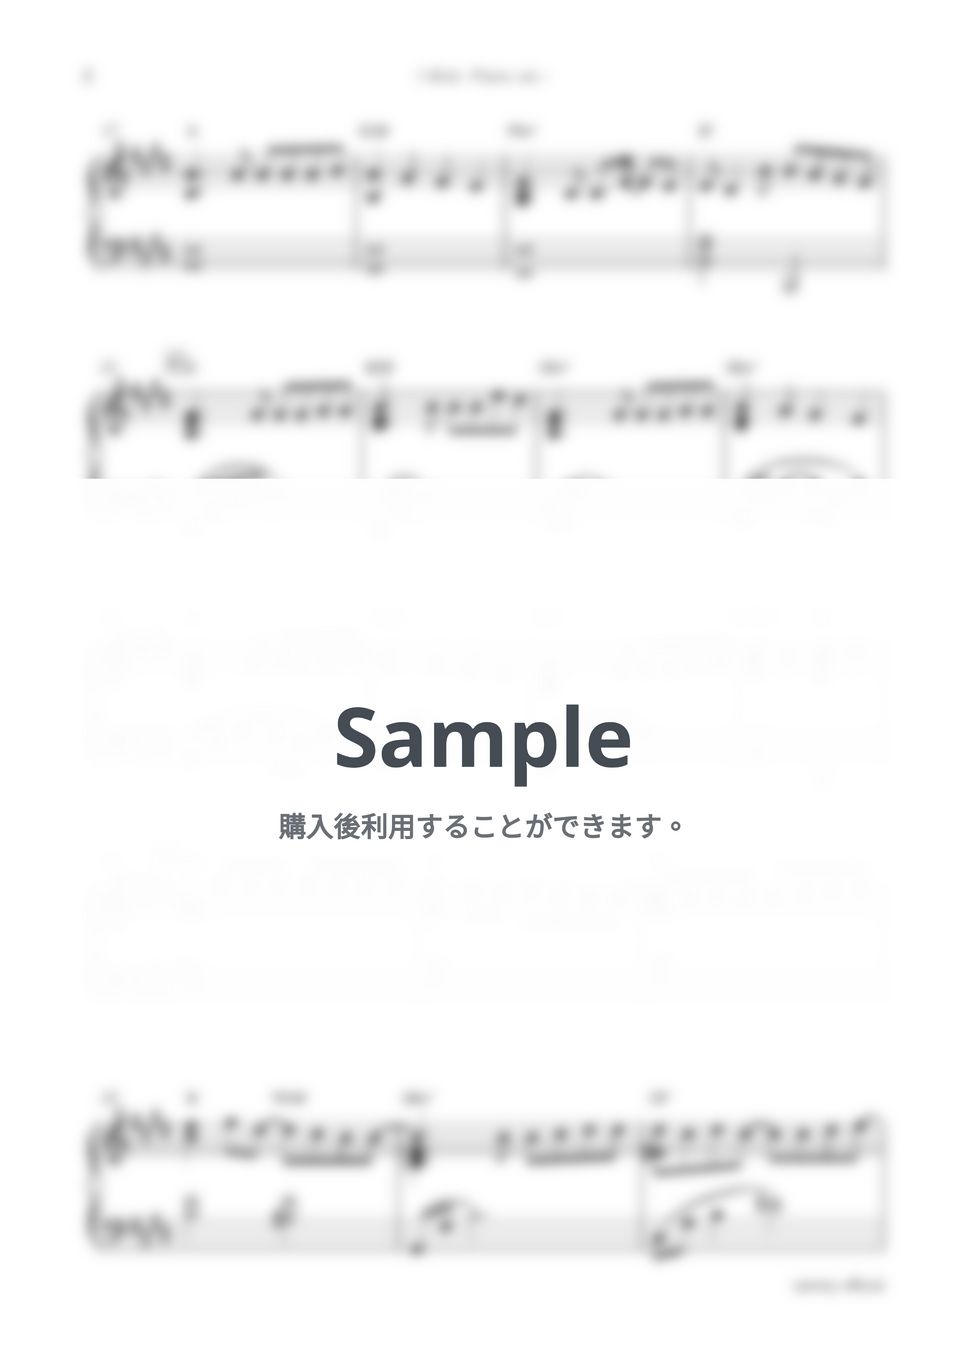 なにわ男子・ドラマ「マイ・セカンド・アオハル」OST - I Wish (Piano ver.) by sammy